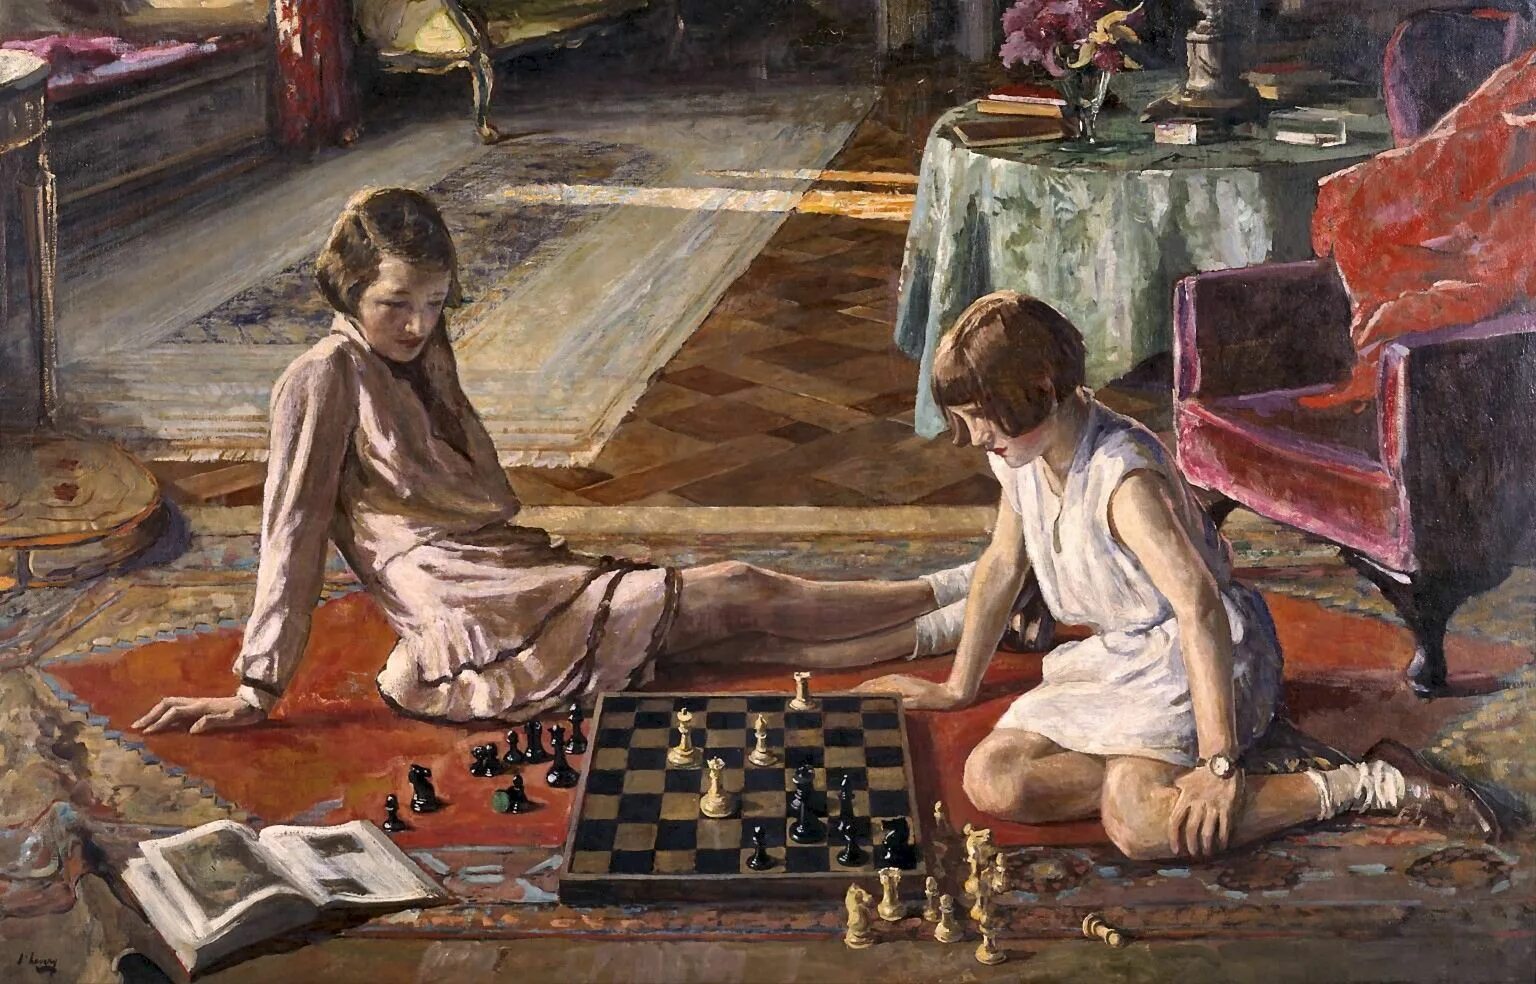 Сама с собой играй. Джон Лавери шахматистки. Картина «шахматистки» Джона Лавери. Джон Лавери живопись. Мориц Ретч шахматисты.